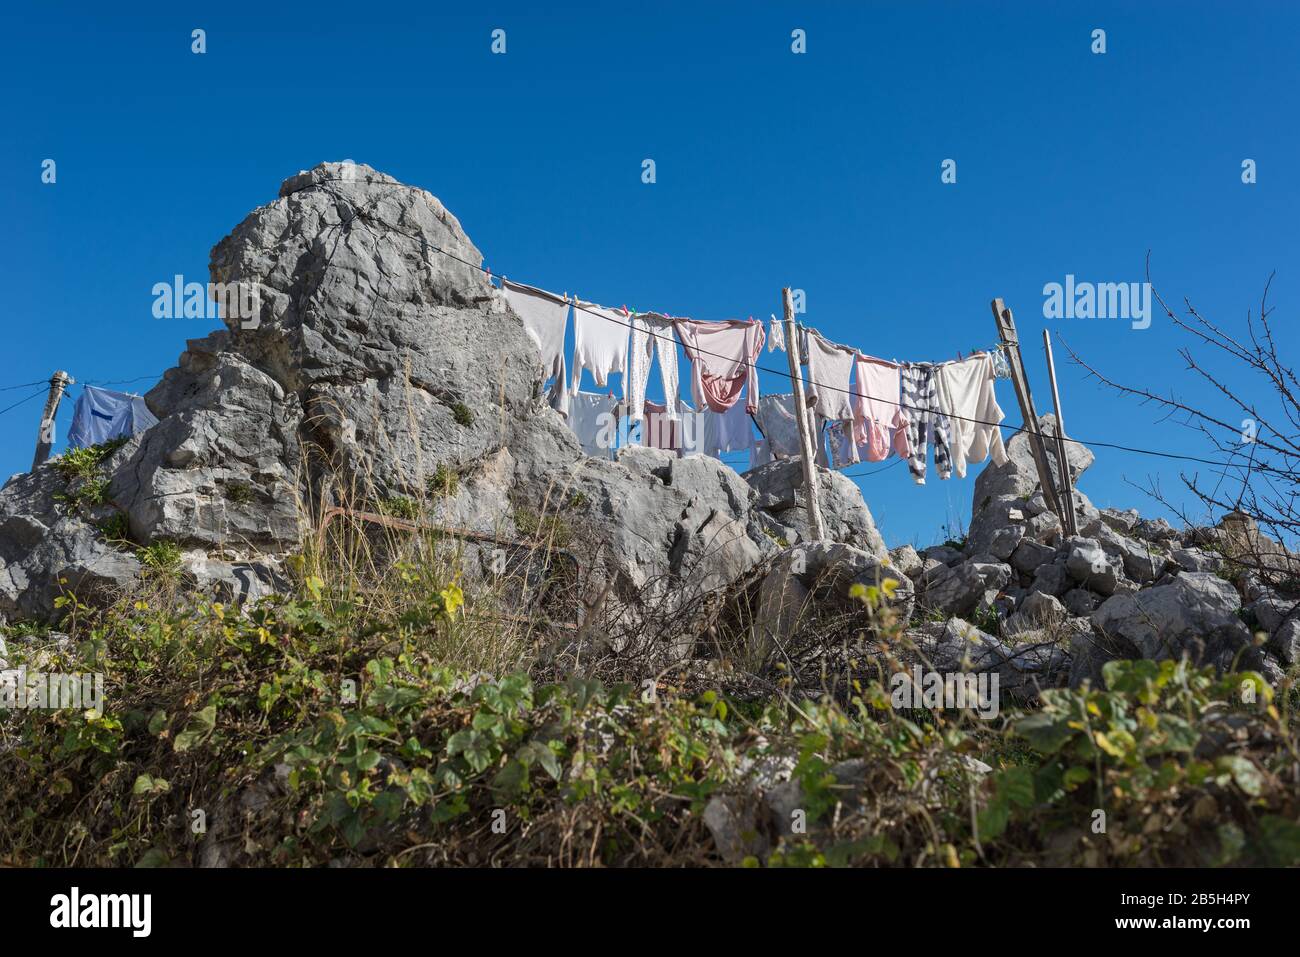 Vêtements suspendus pour sécher sur un clothesline construit sur un rocher dans une ville rurale du sud de l'Espagne. Banque D'Images